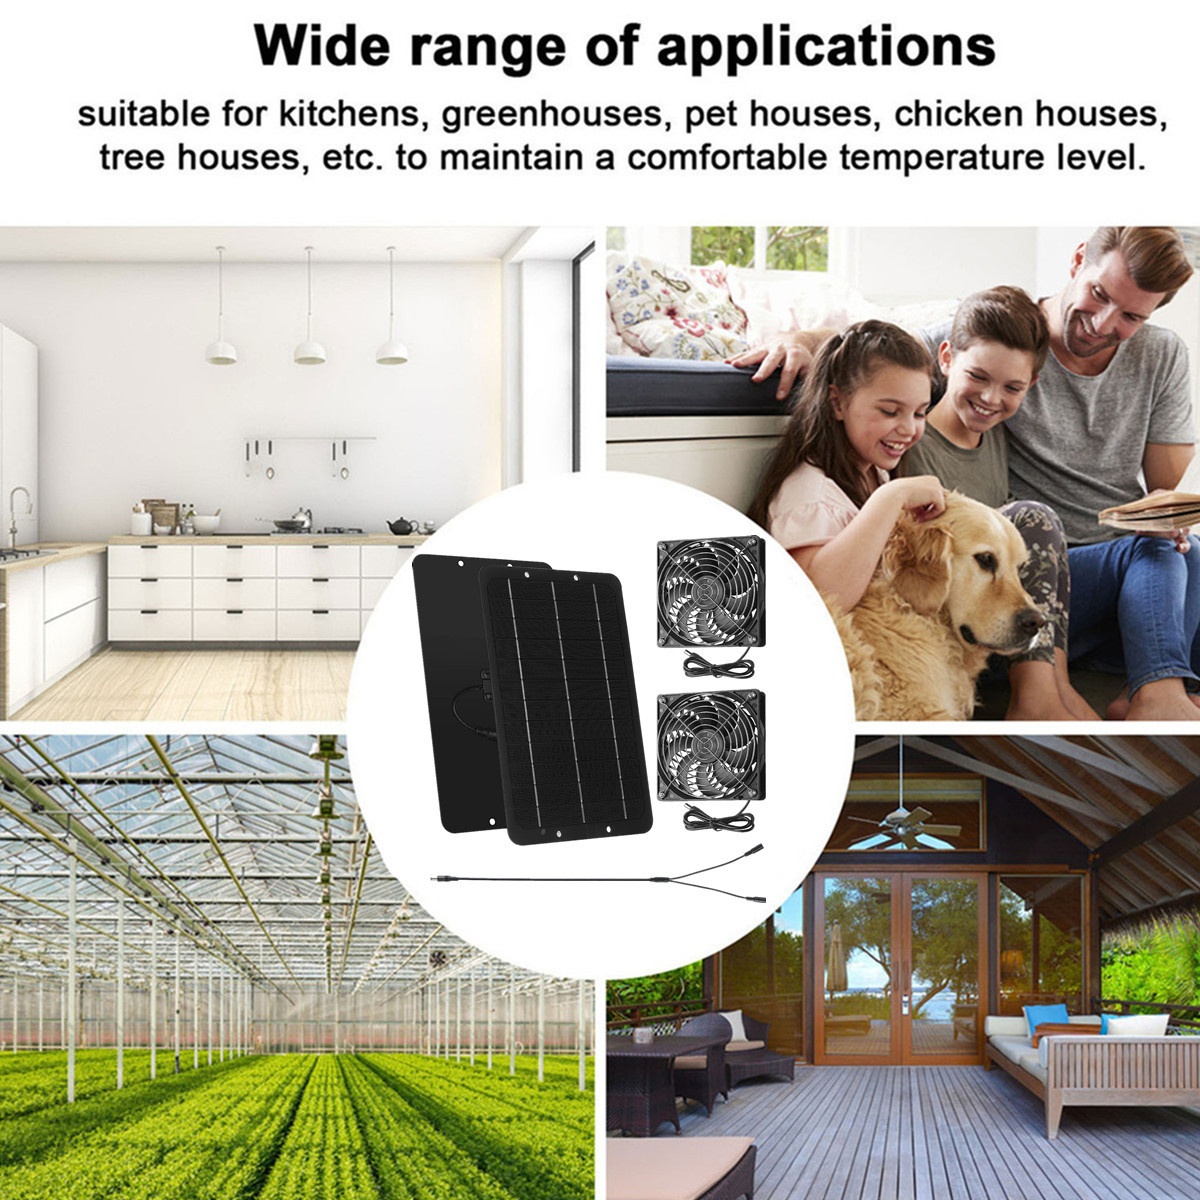 Solar Panel Exhaust Fan, Outdoor Waterproof Solar Exhaust Fan, Portable  Exhaust Fan for RVs, Greenhouses, Pet Houses, Chicken House 